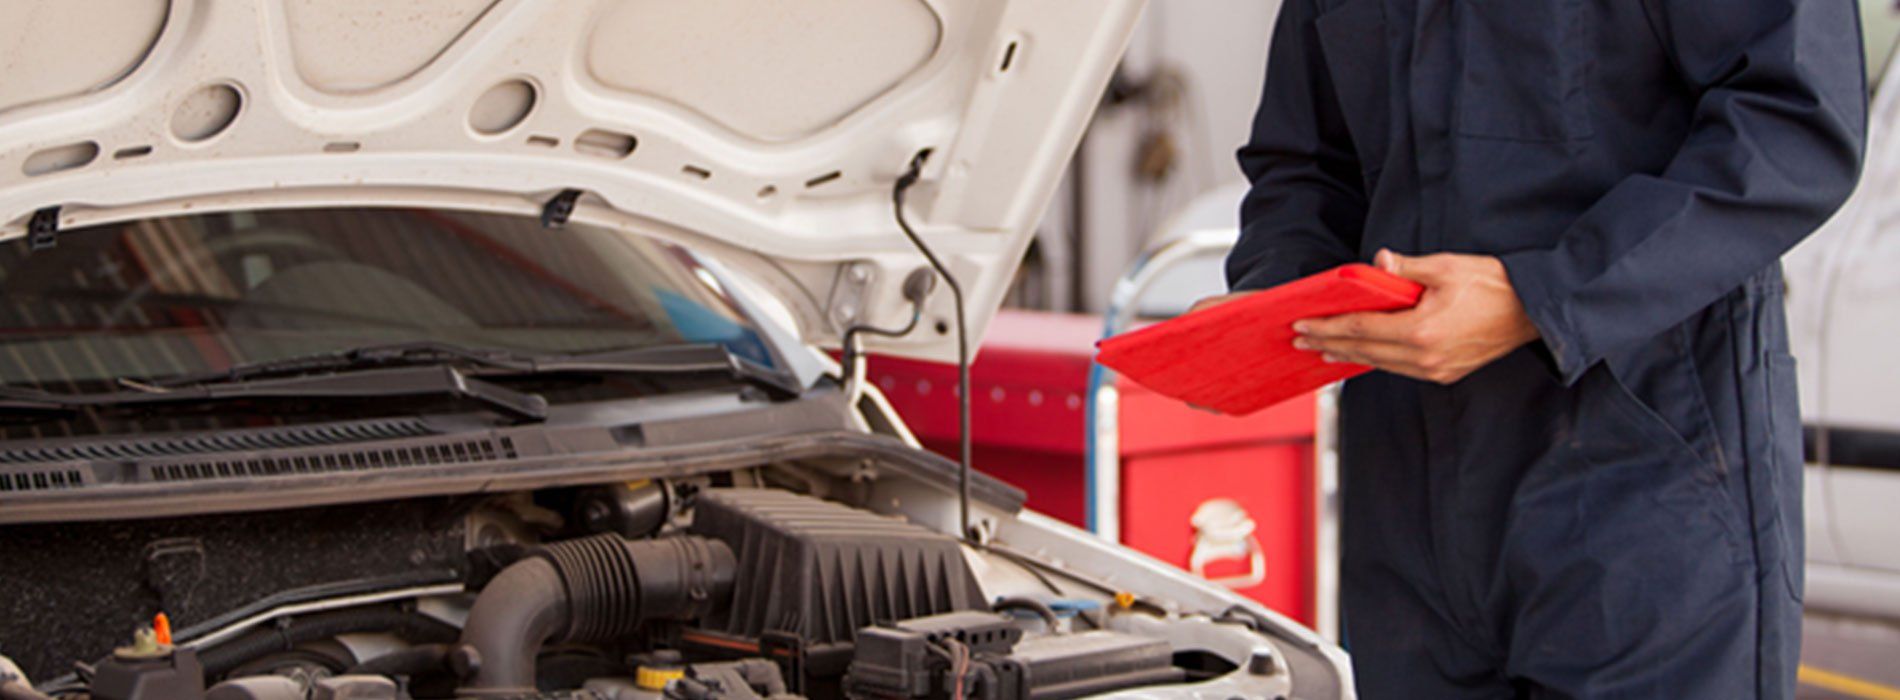 Auto Repair and Maintenance